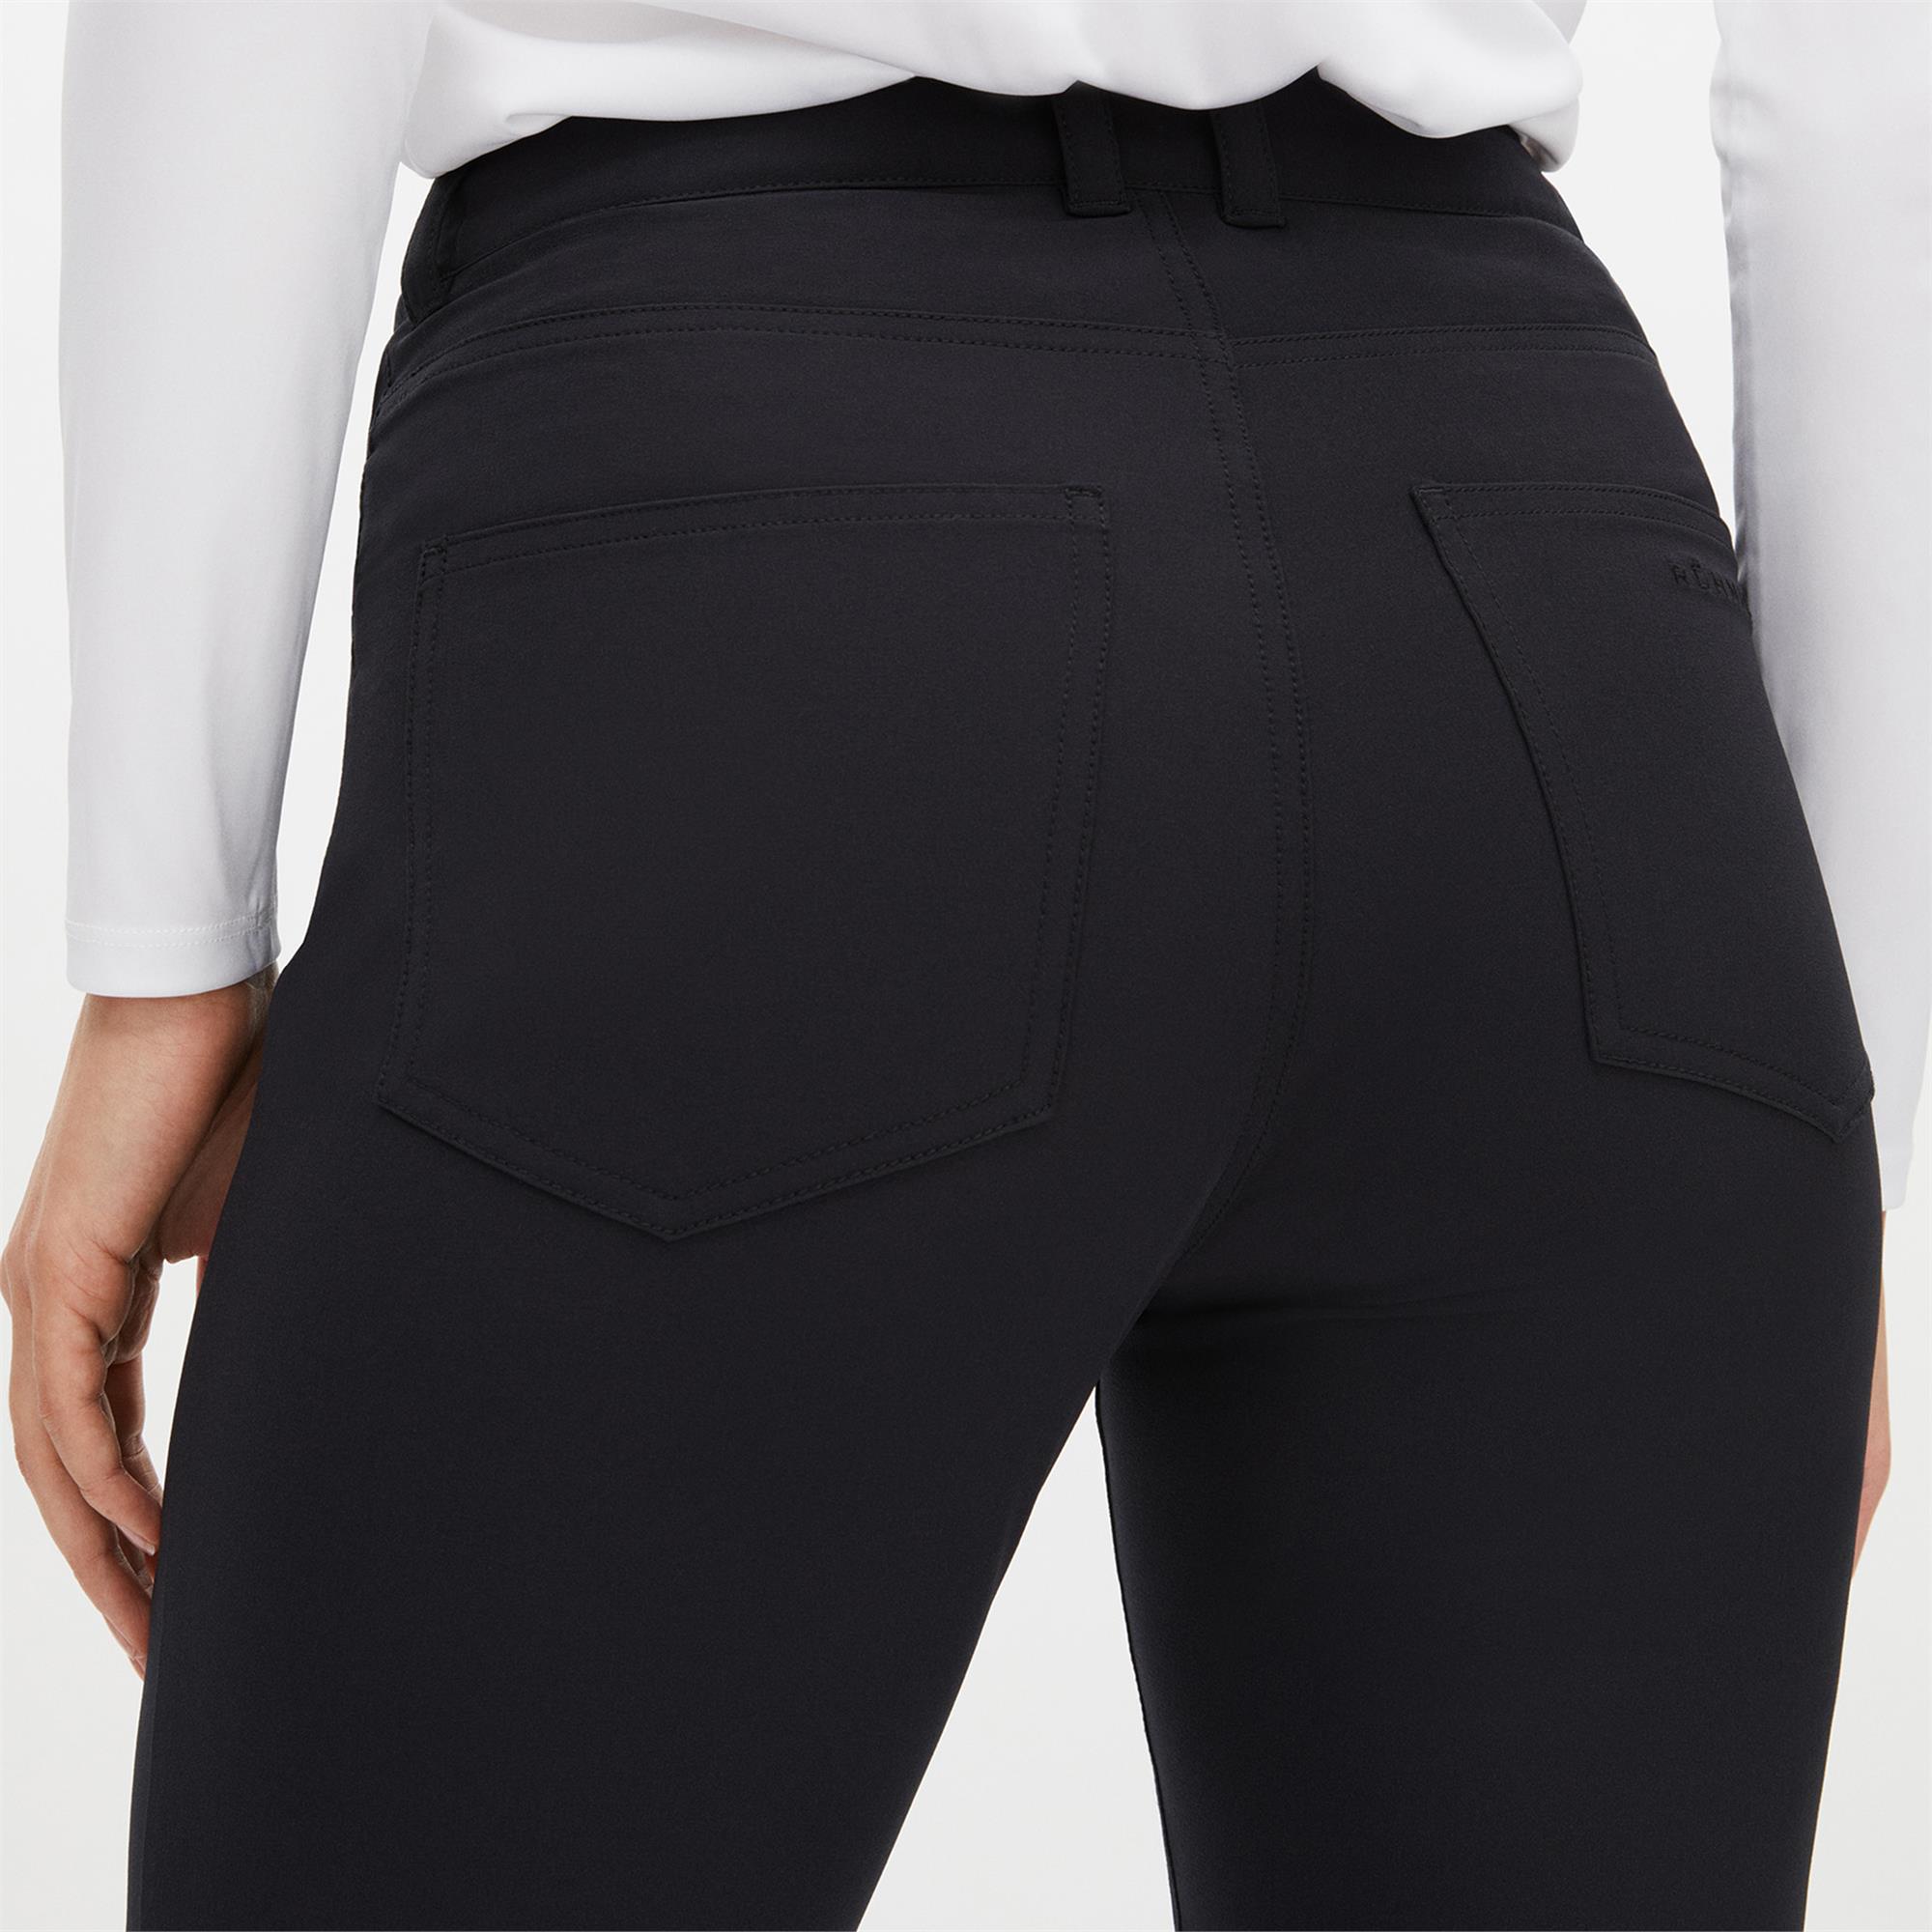 Rohnisch Jessie High Stretch Slim Fit Ladies Golf Pants Black - NEW! 2022